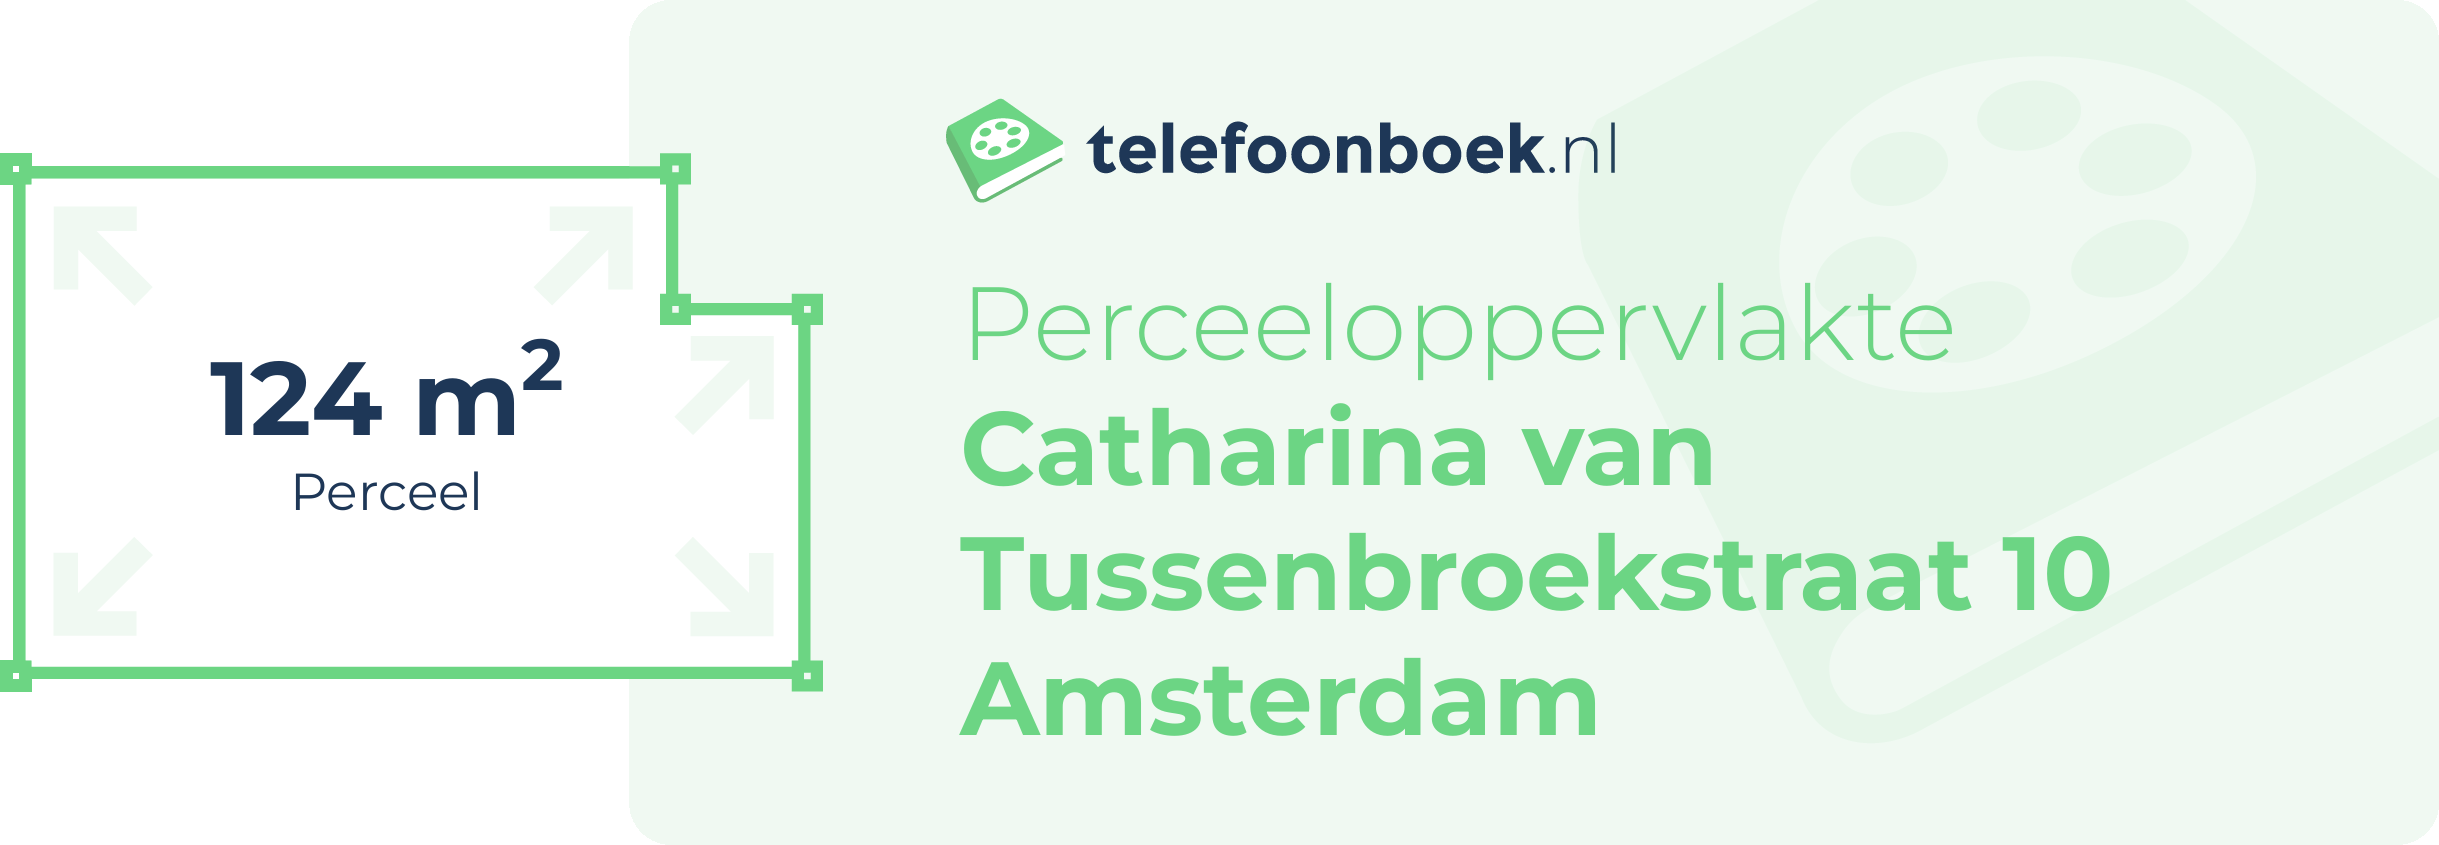 Perceeloppervlakte Catharina Van Tussenbroekstraat 10 Amsterdam